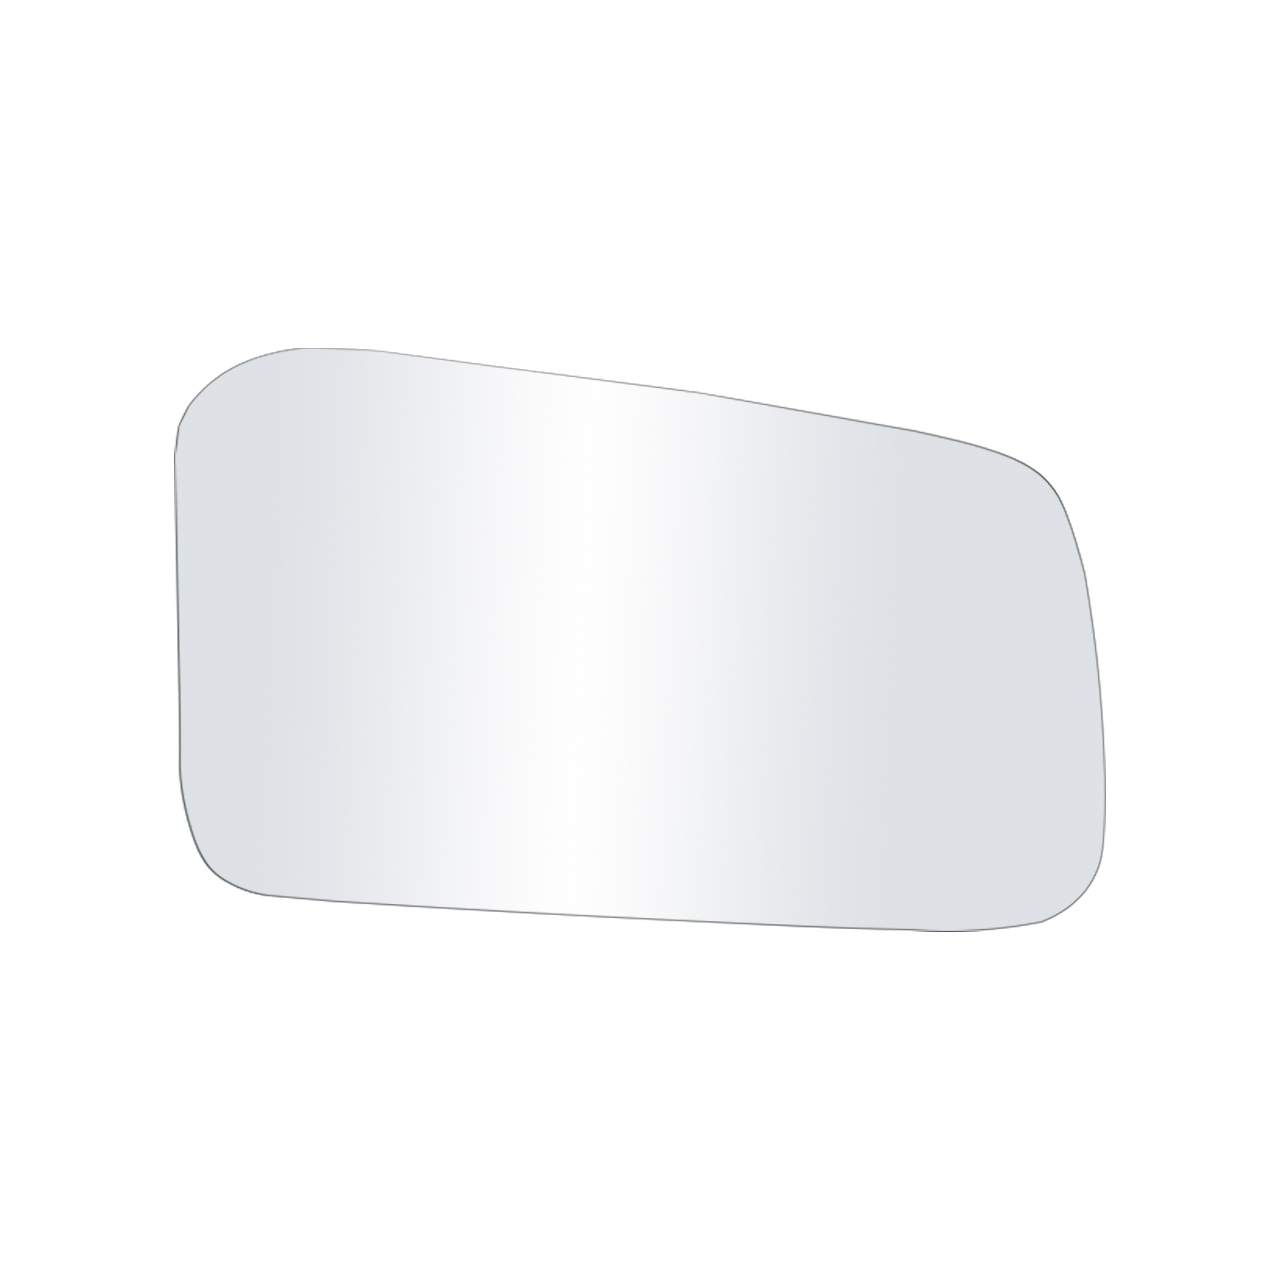 شیشه آینه جانبی راست دینا پارت کد H211016  مناسب برای پیکان